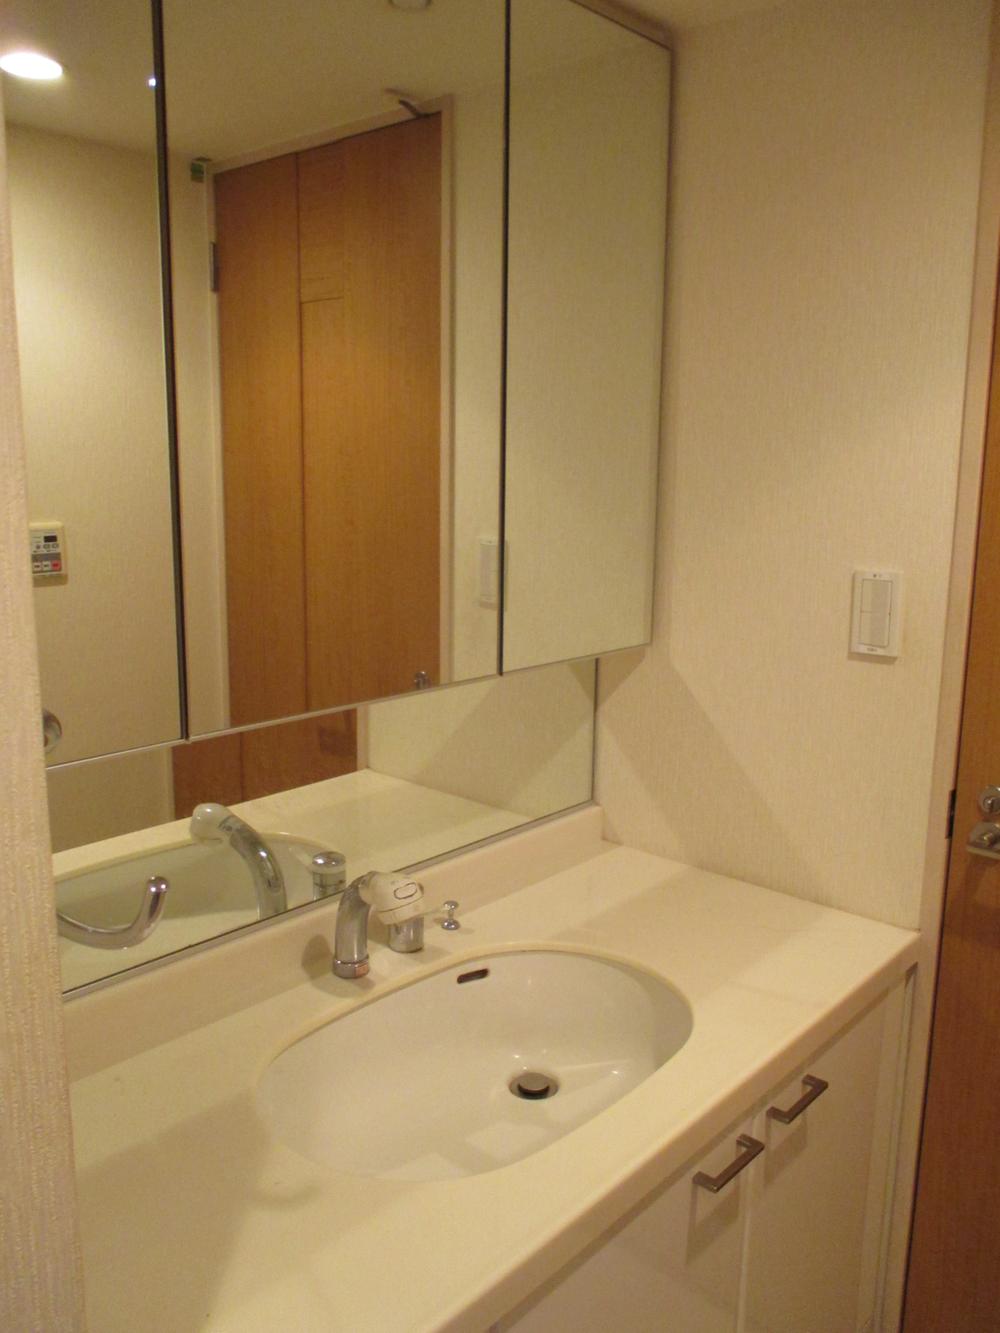 Wash basin, toilet. Vanity (September 2013 shooting)